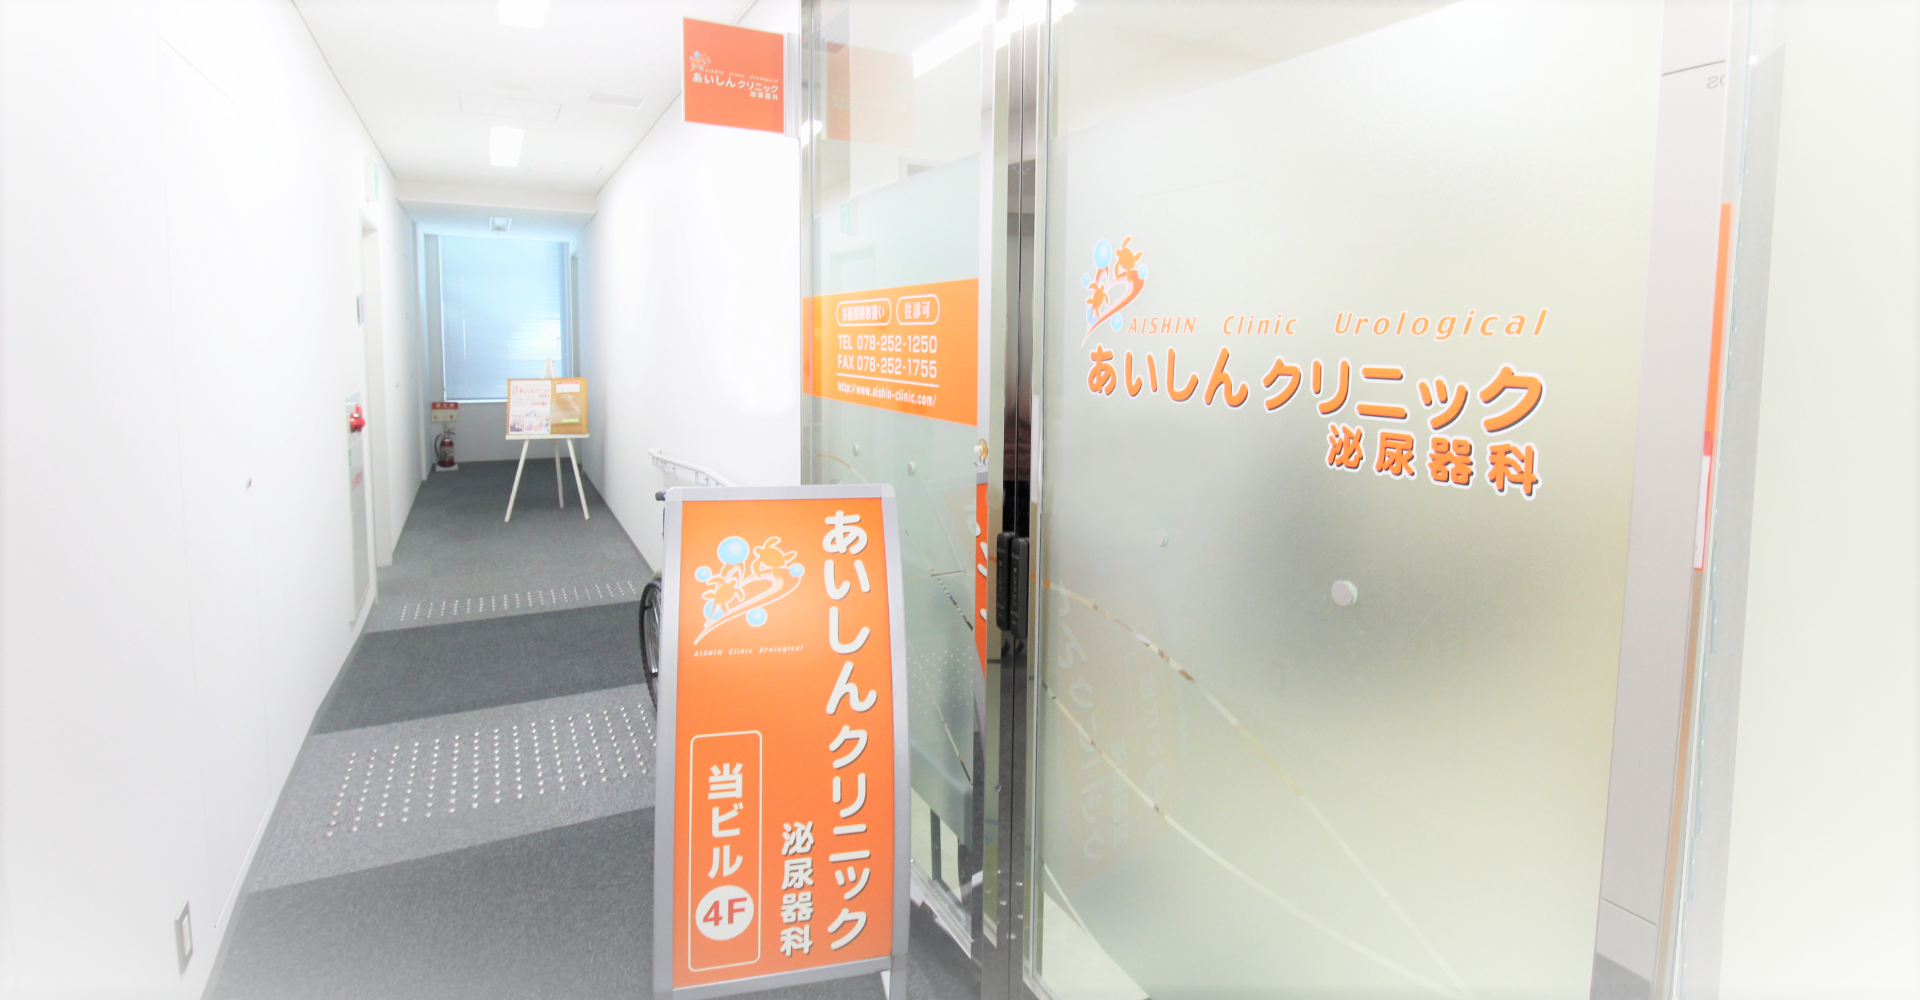 あいしんクリニック泌尿器科 | 神戸市中央区・三宮の泌尿器科